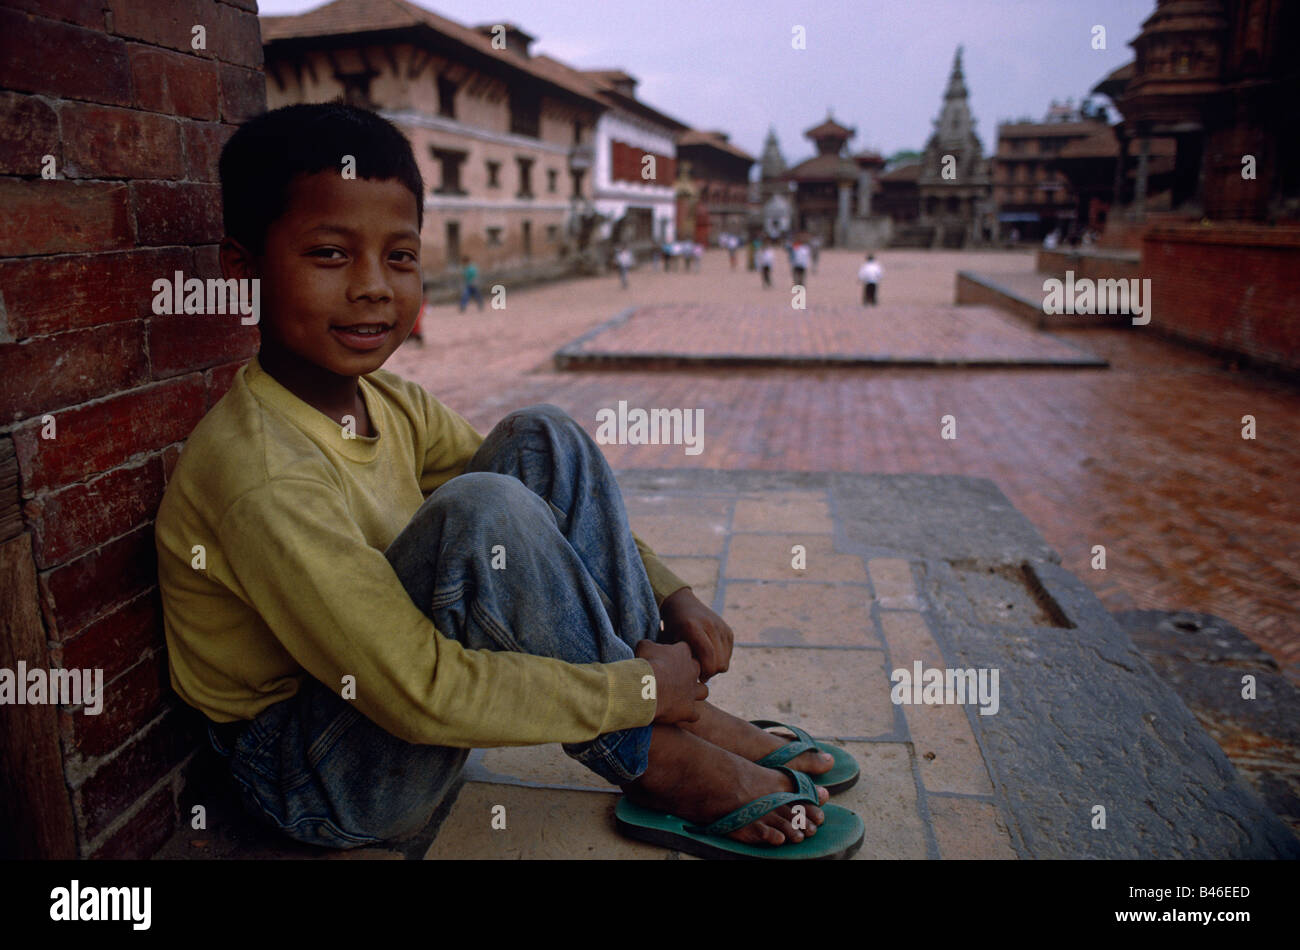 Young Nepali garçon assis sur les immeubles de la chaussée à Katmandou Népal Bhaktapur distance Banque D'Images